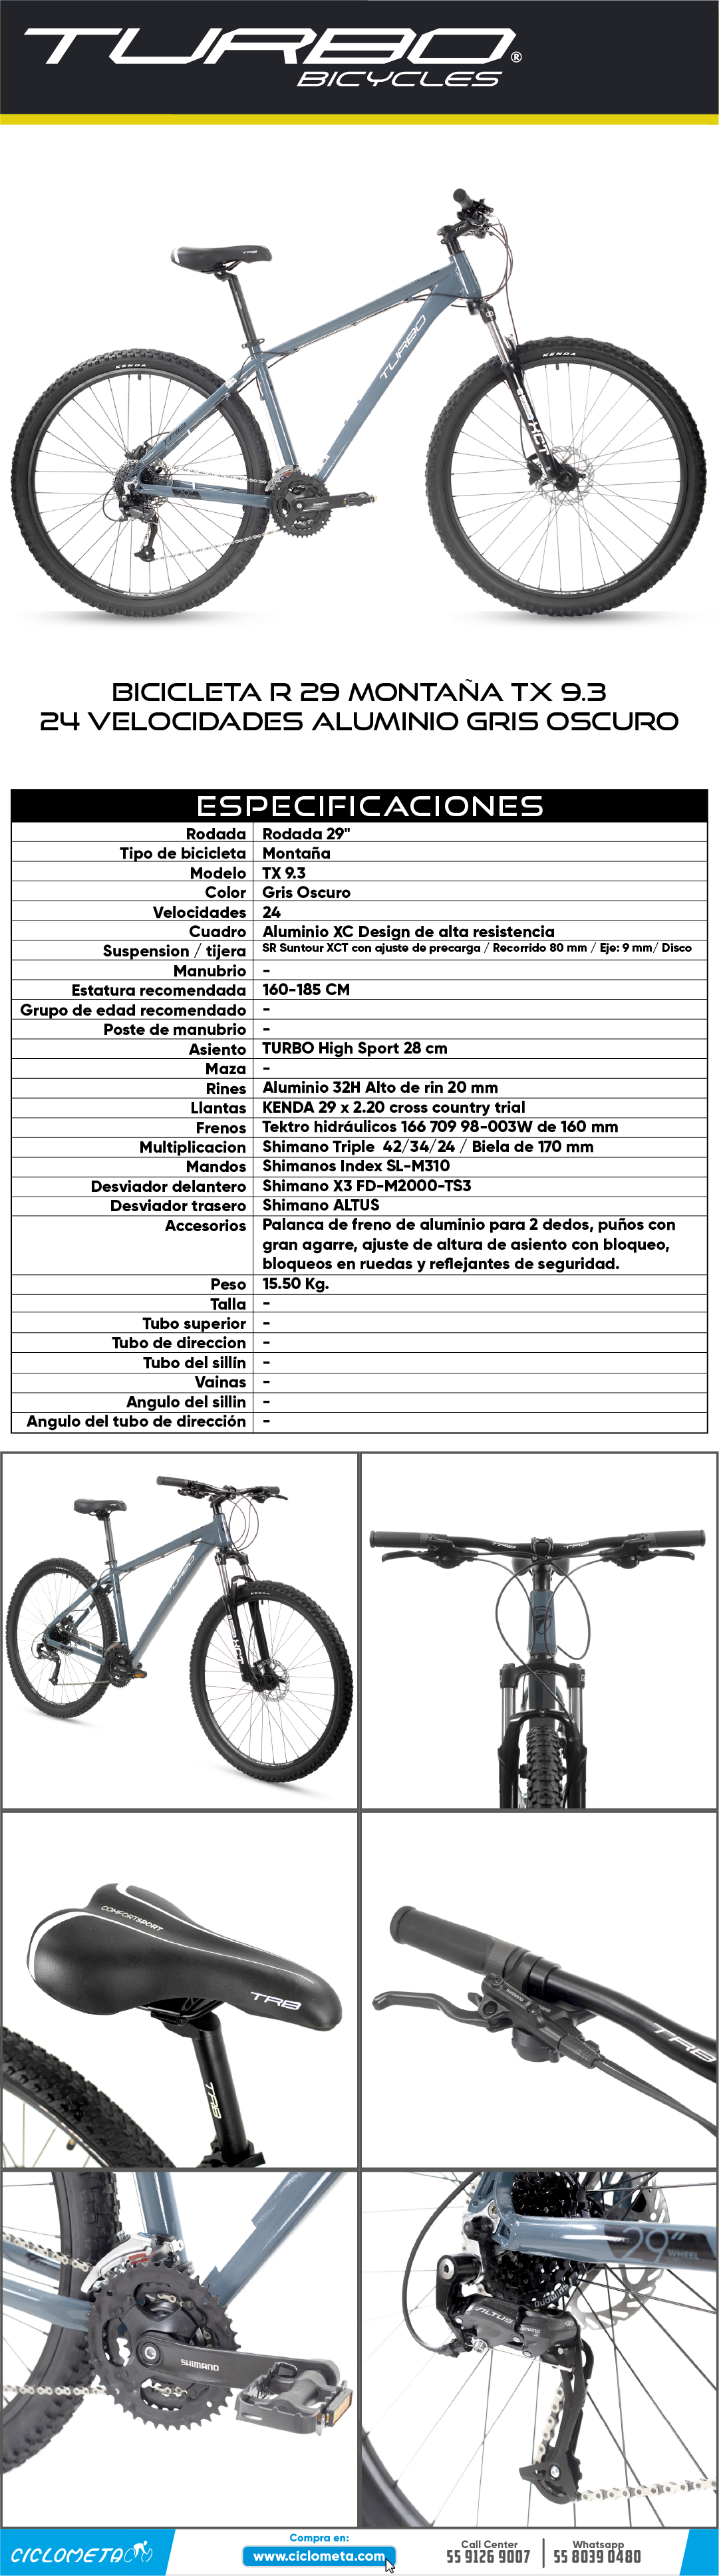 Ciclometa Detalles Bicicleta R 29 Montaña TX9.1 21 Velocidades